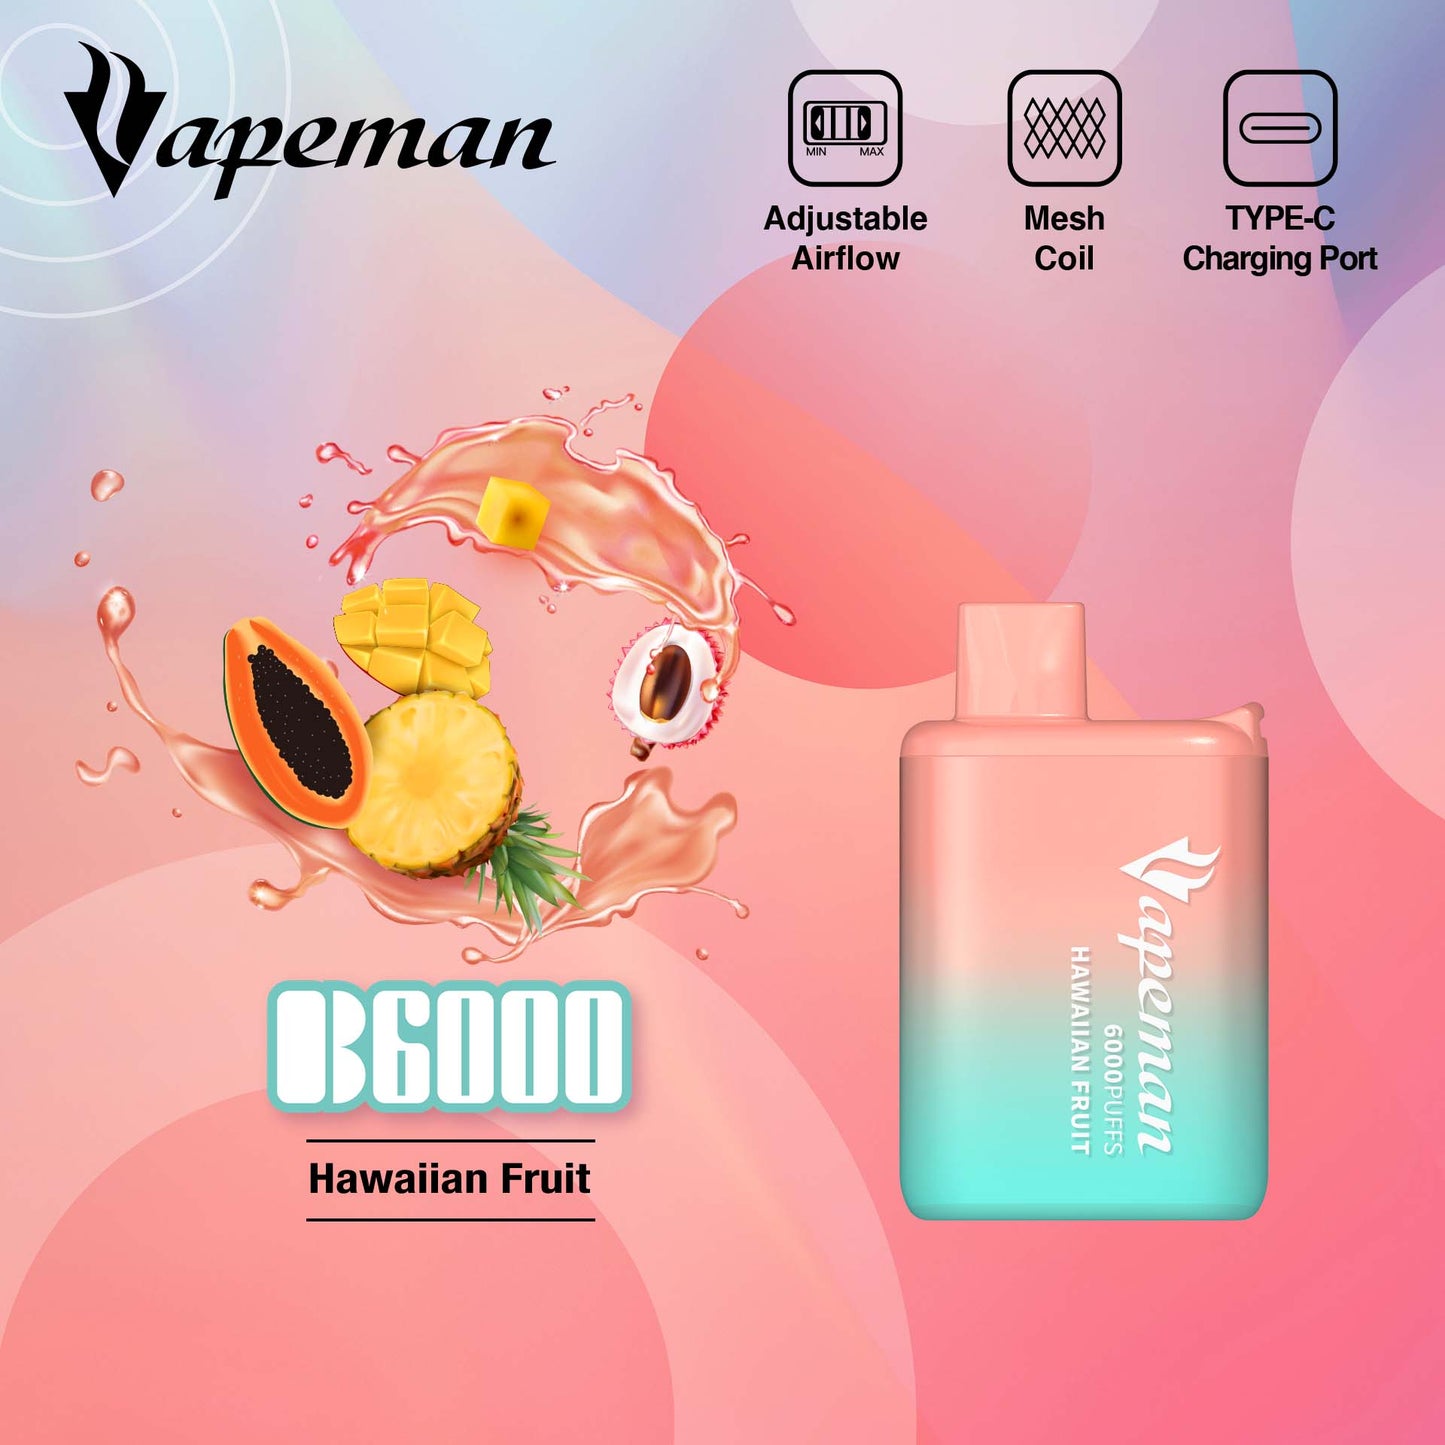 Vapeman - B6000 - Hawaiian Fruit -  Disposable Vape Device - Salt Nicotine 